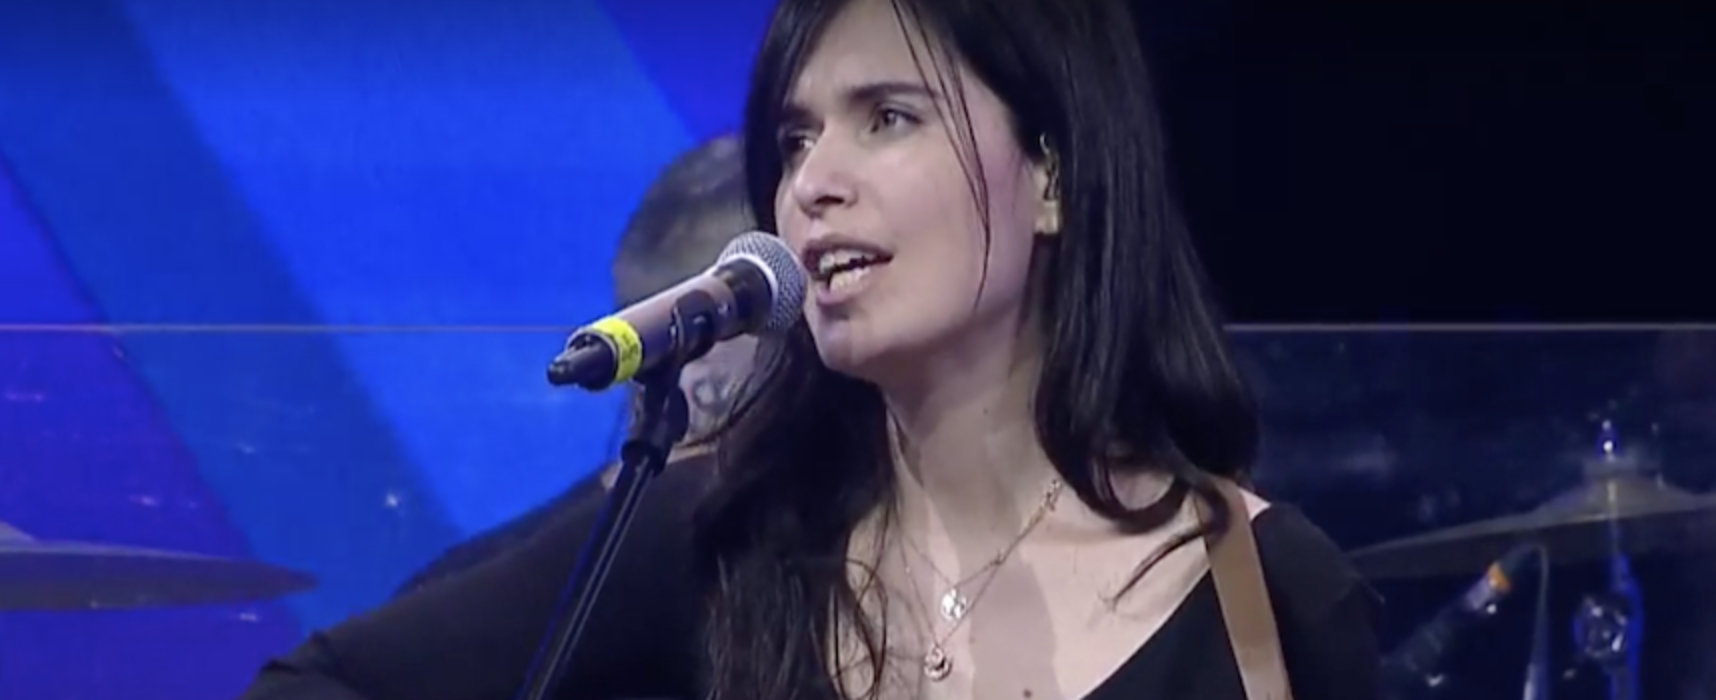 Erica Mou su Rai Radio2, la cover “Soldi” di Mahmood contaminata dal biscegliese / VIDEO